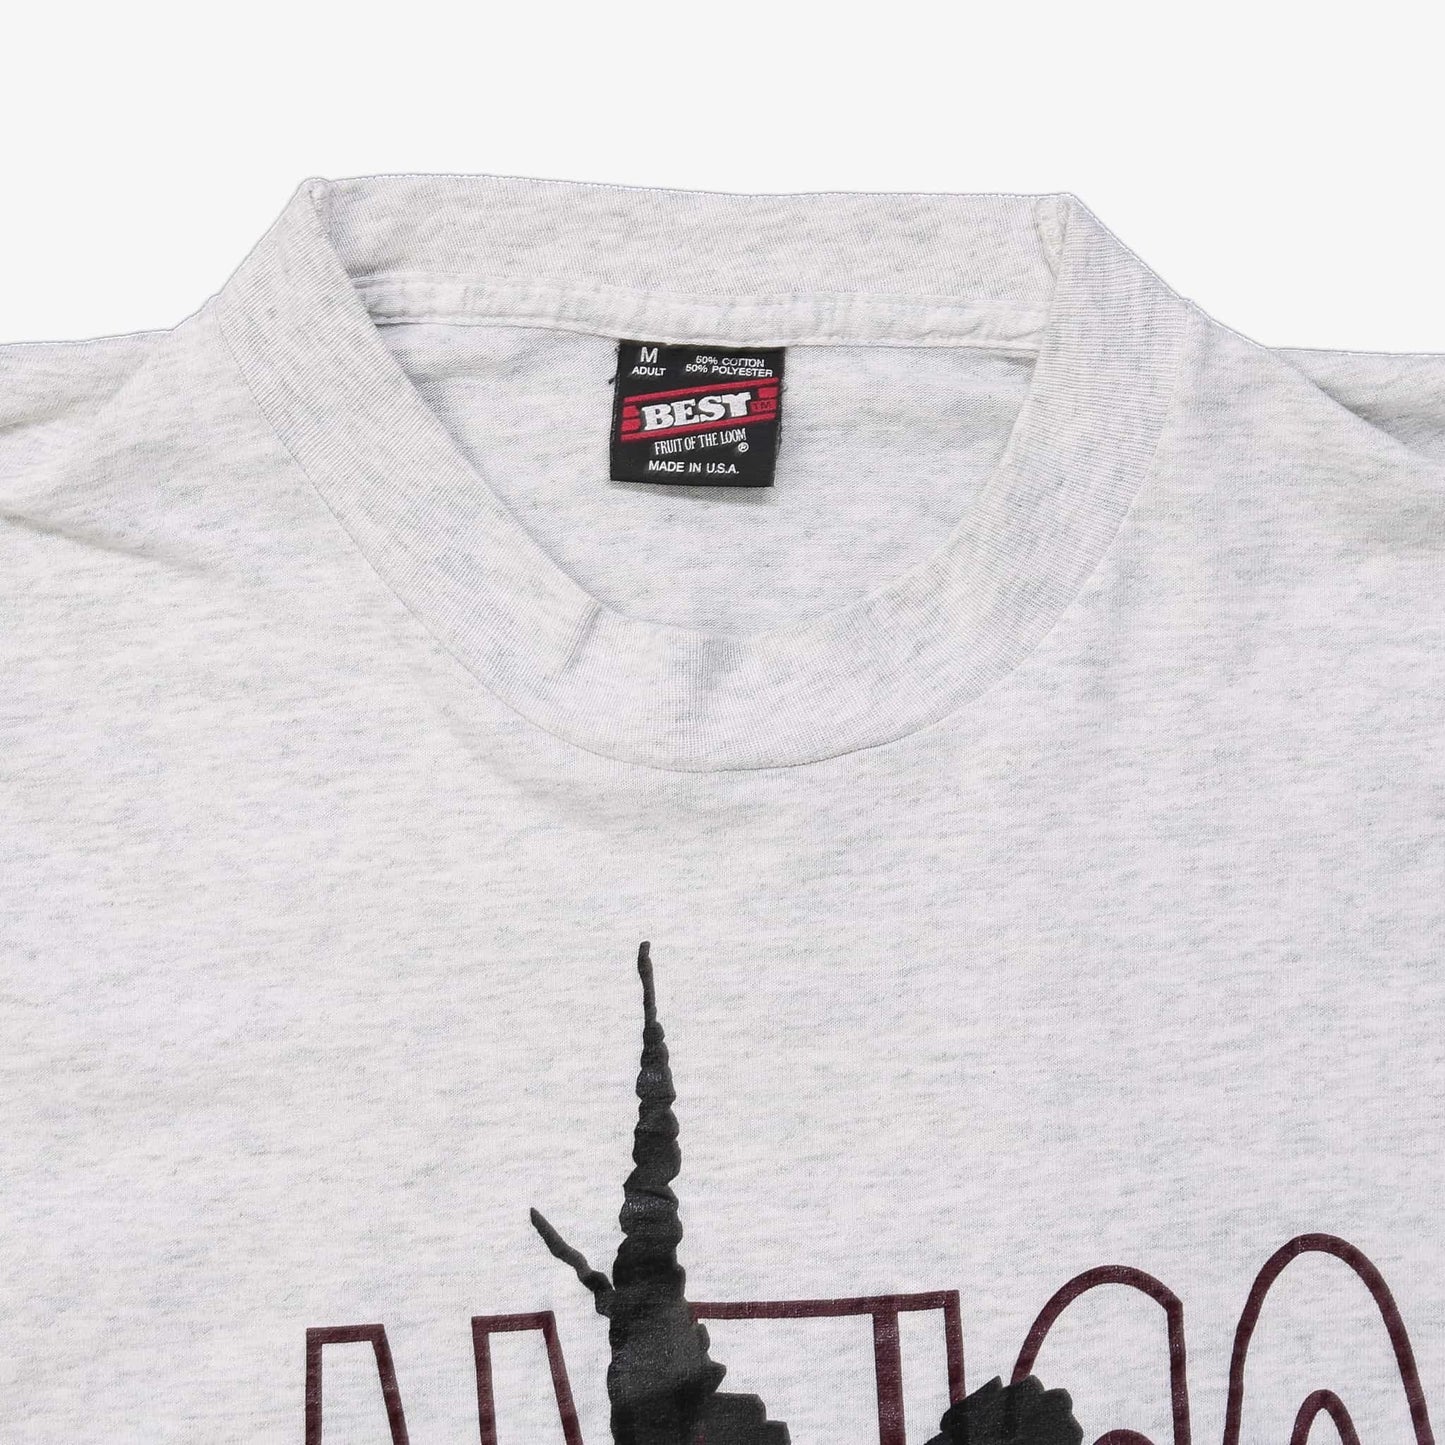 Vintage "Antigo 1995" T-Shirt - American Madness